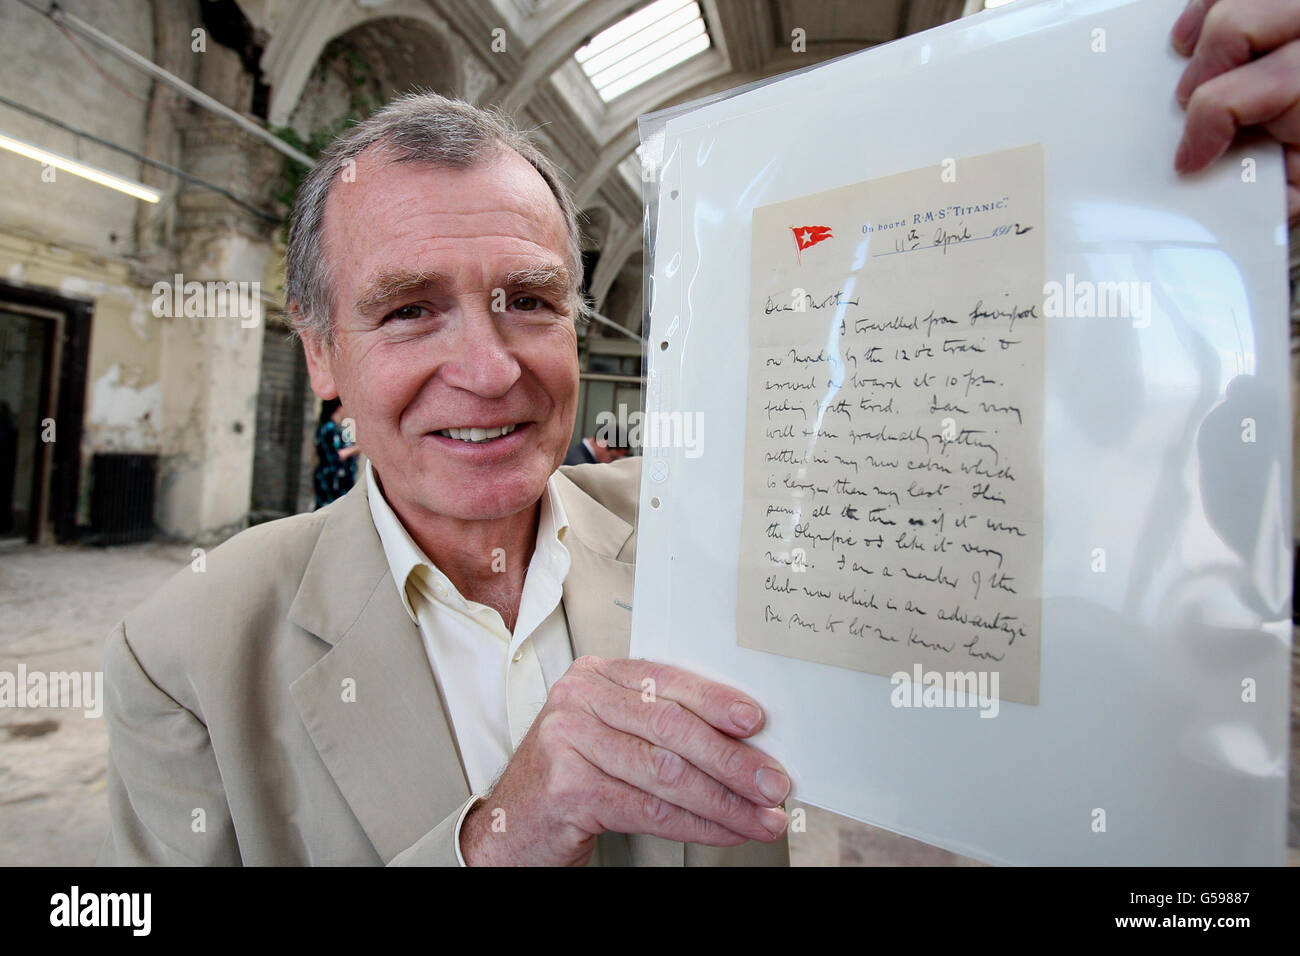 Dr. John Martin der Urneffe von Dr. John Simpson, der auf der Titanic umkam, hält einen Brief von der Titanic in den alten Salon von Harland und Wolff, der diesen Sommer im neuen Besucherzentrum in Belfast, das dem Linienschiff gewidmet ist, ausgestellt wird. Stockfoto